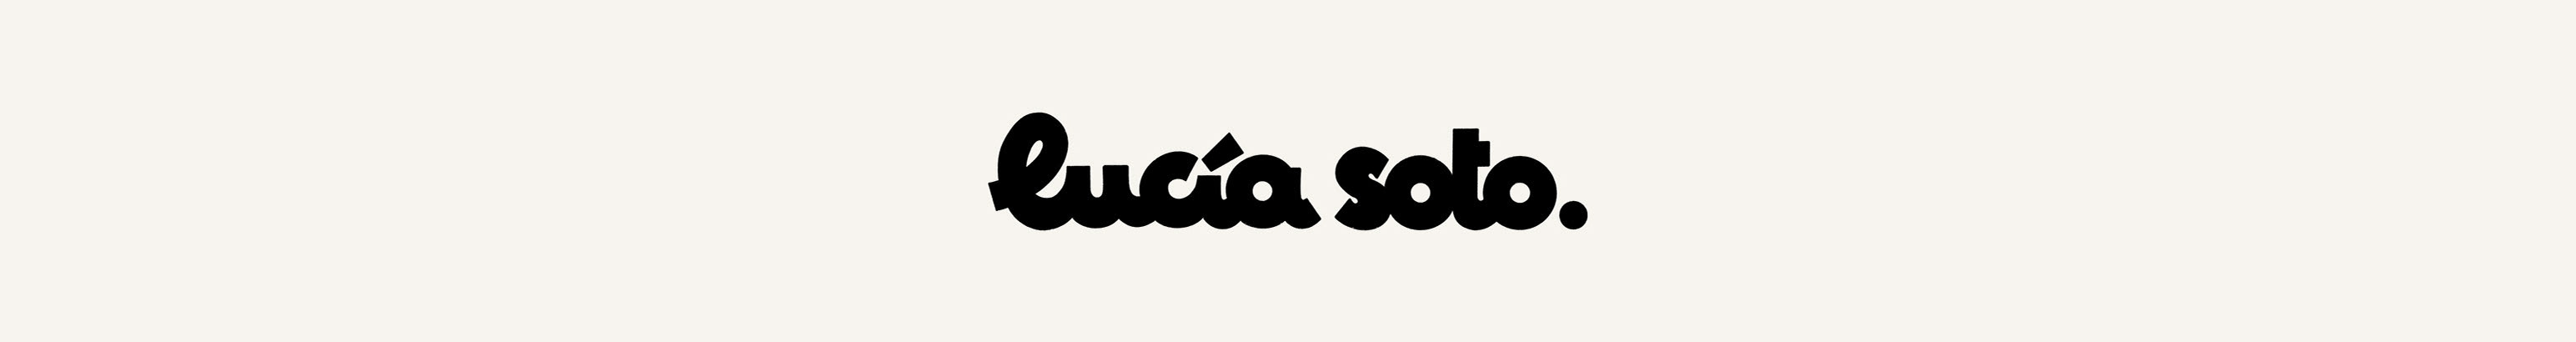 Lucia Soto's profile banner